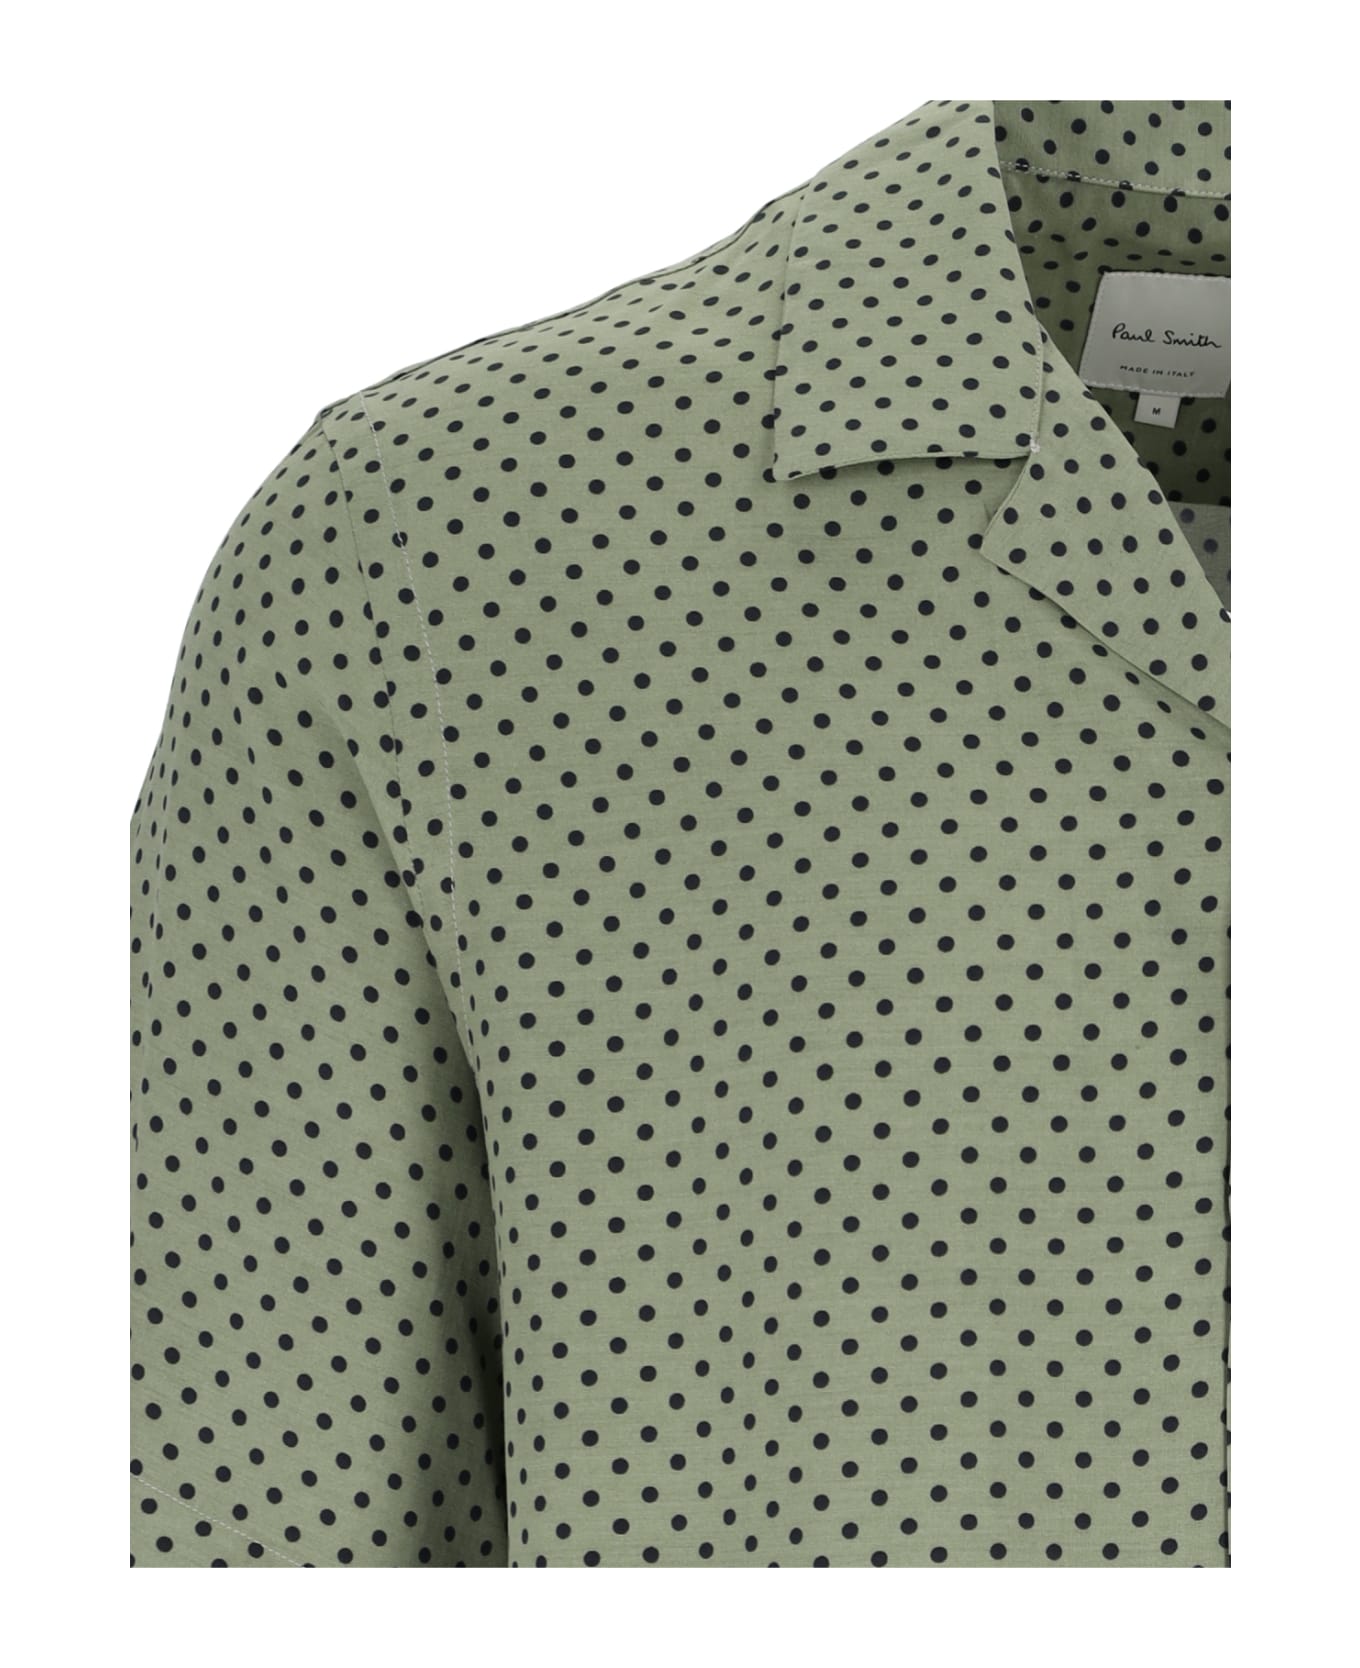 Paul Smith Polka Dot Shirt - Green